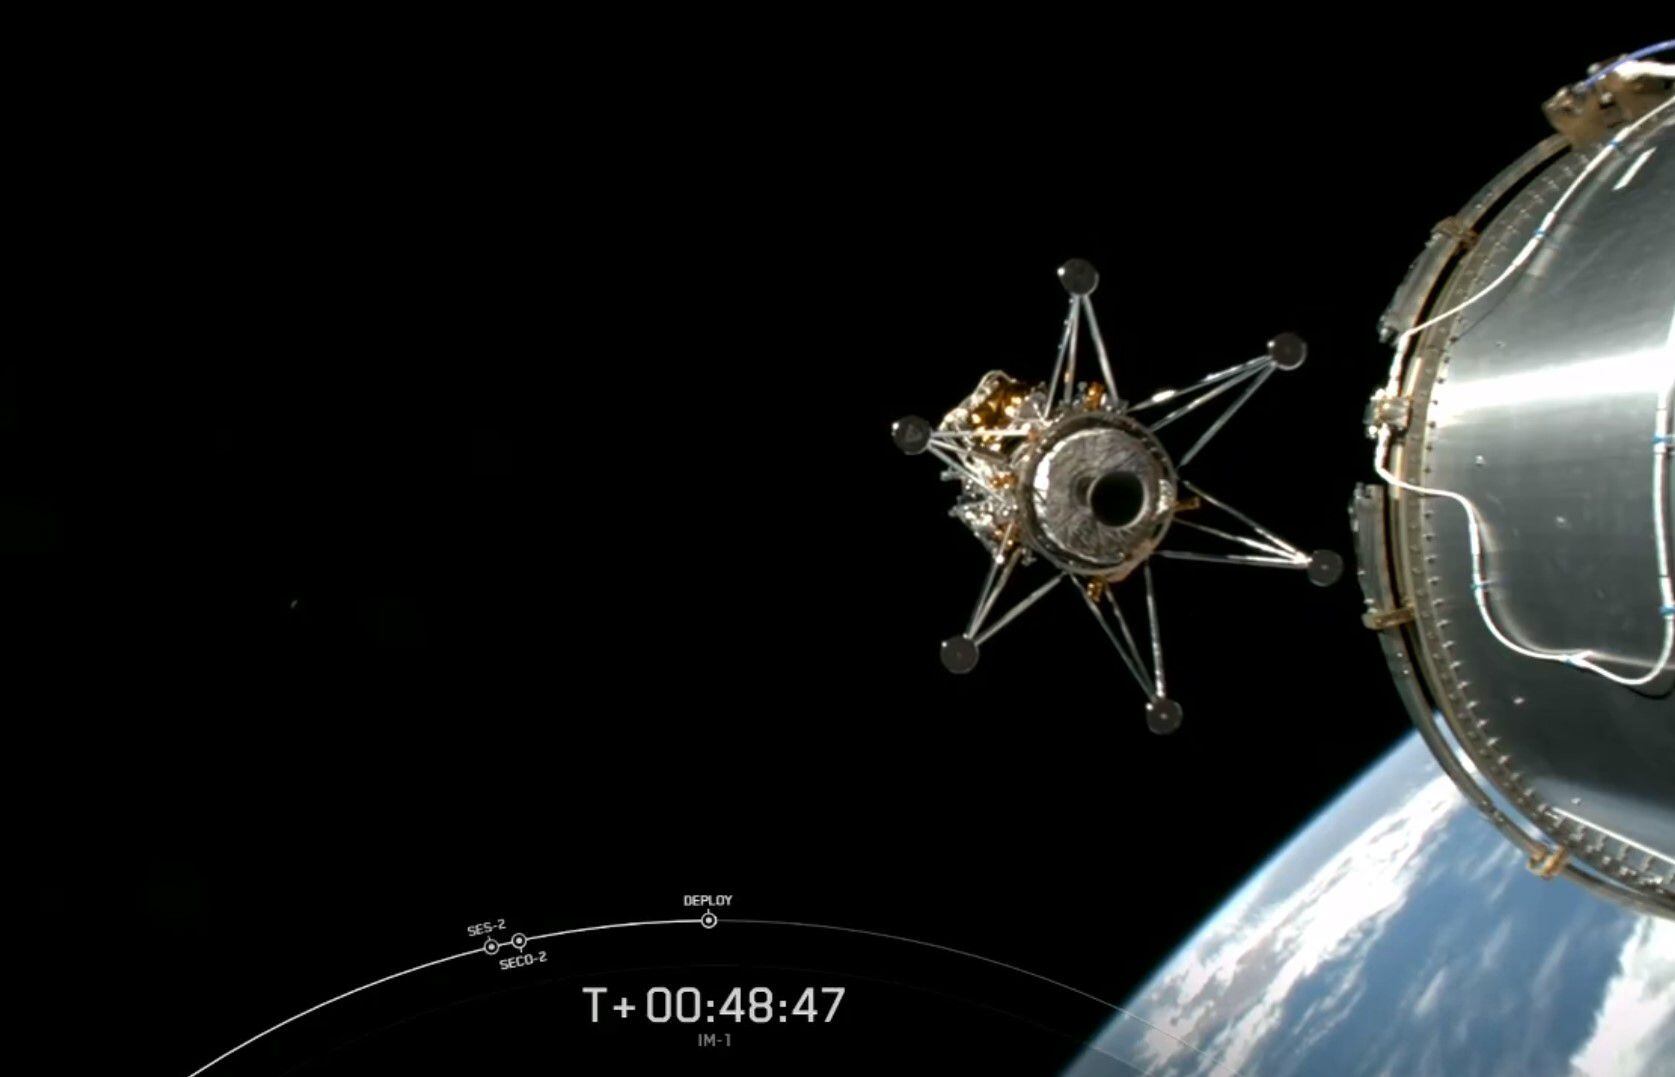 'Odiseo', con sus seis patas, se separa del cohete de SpaceX rumbo a la Luna, un pequeño punto a la izquierda.